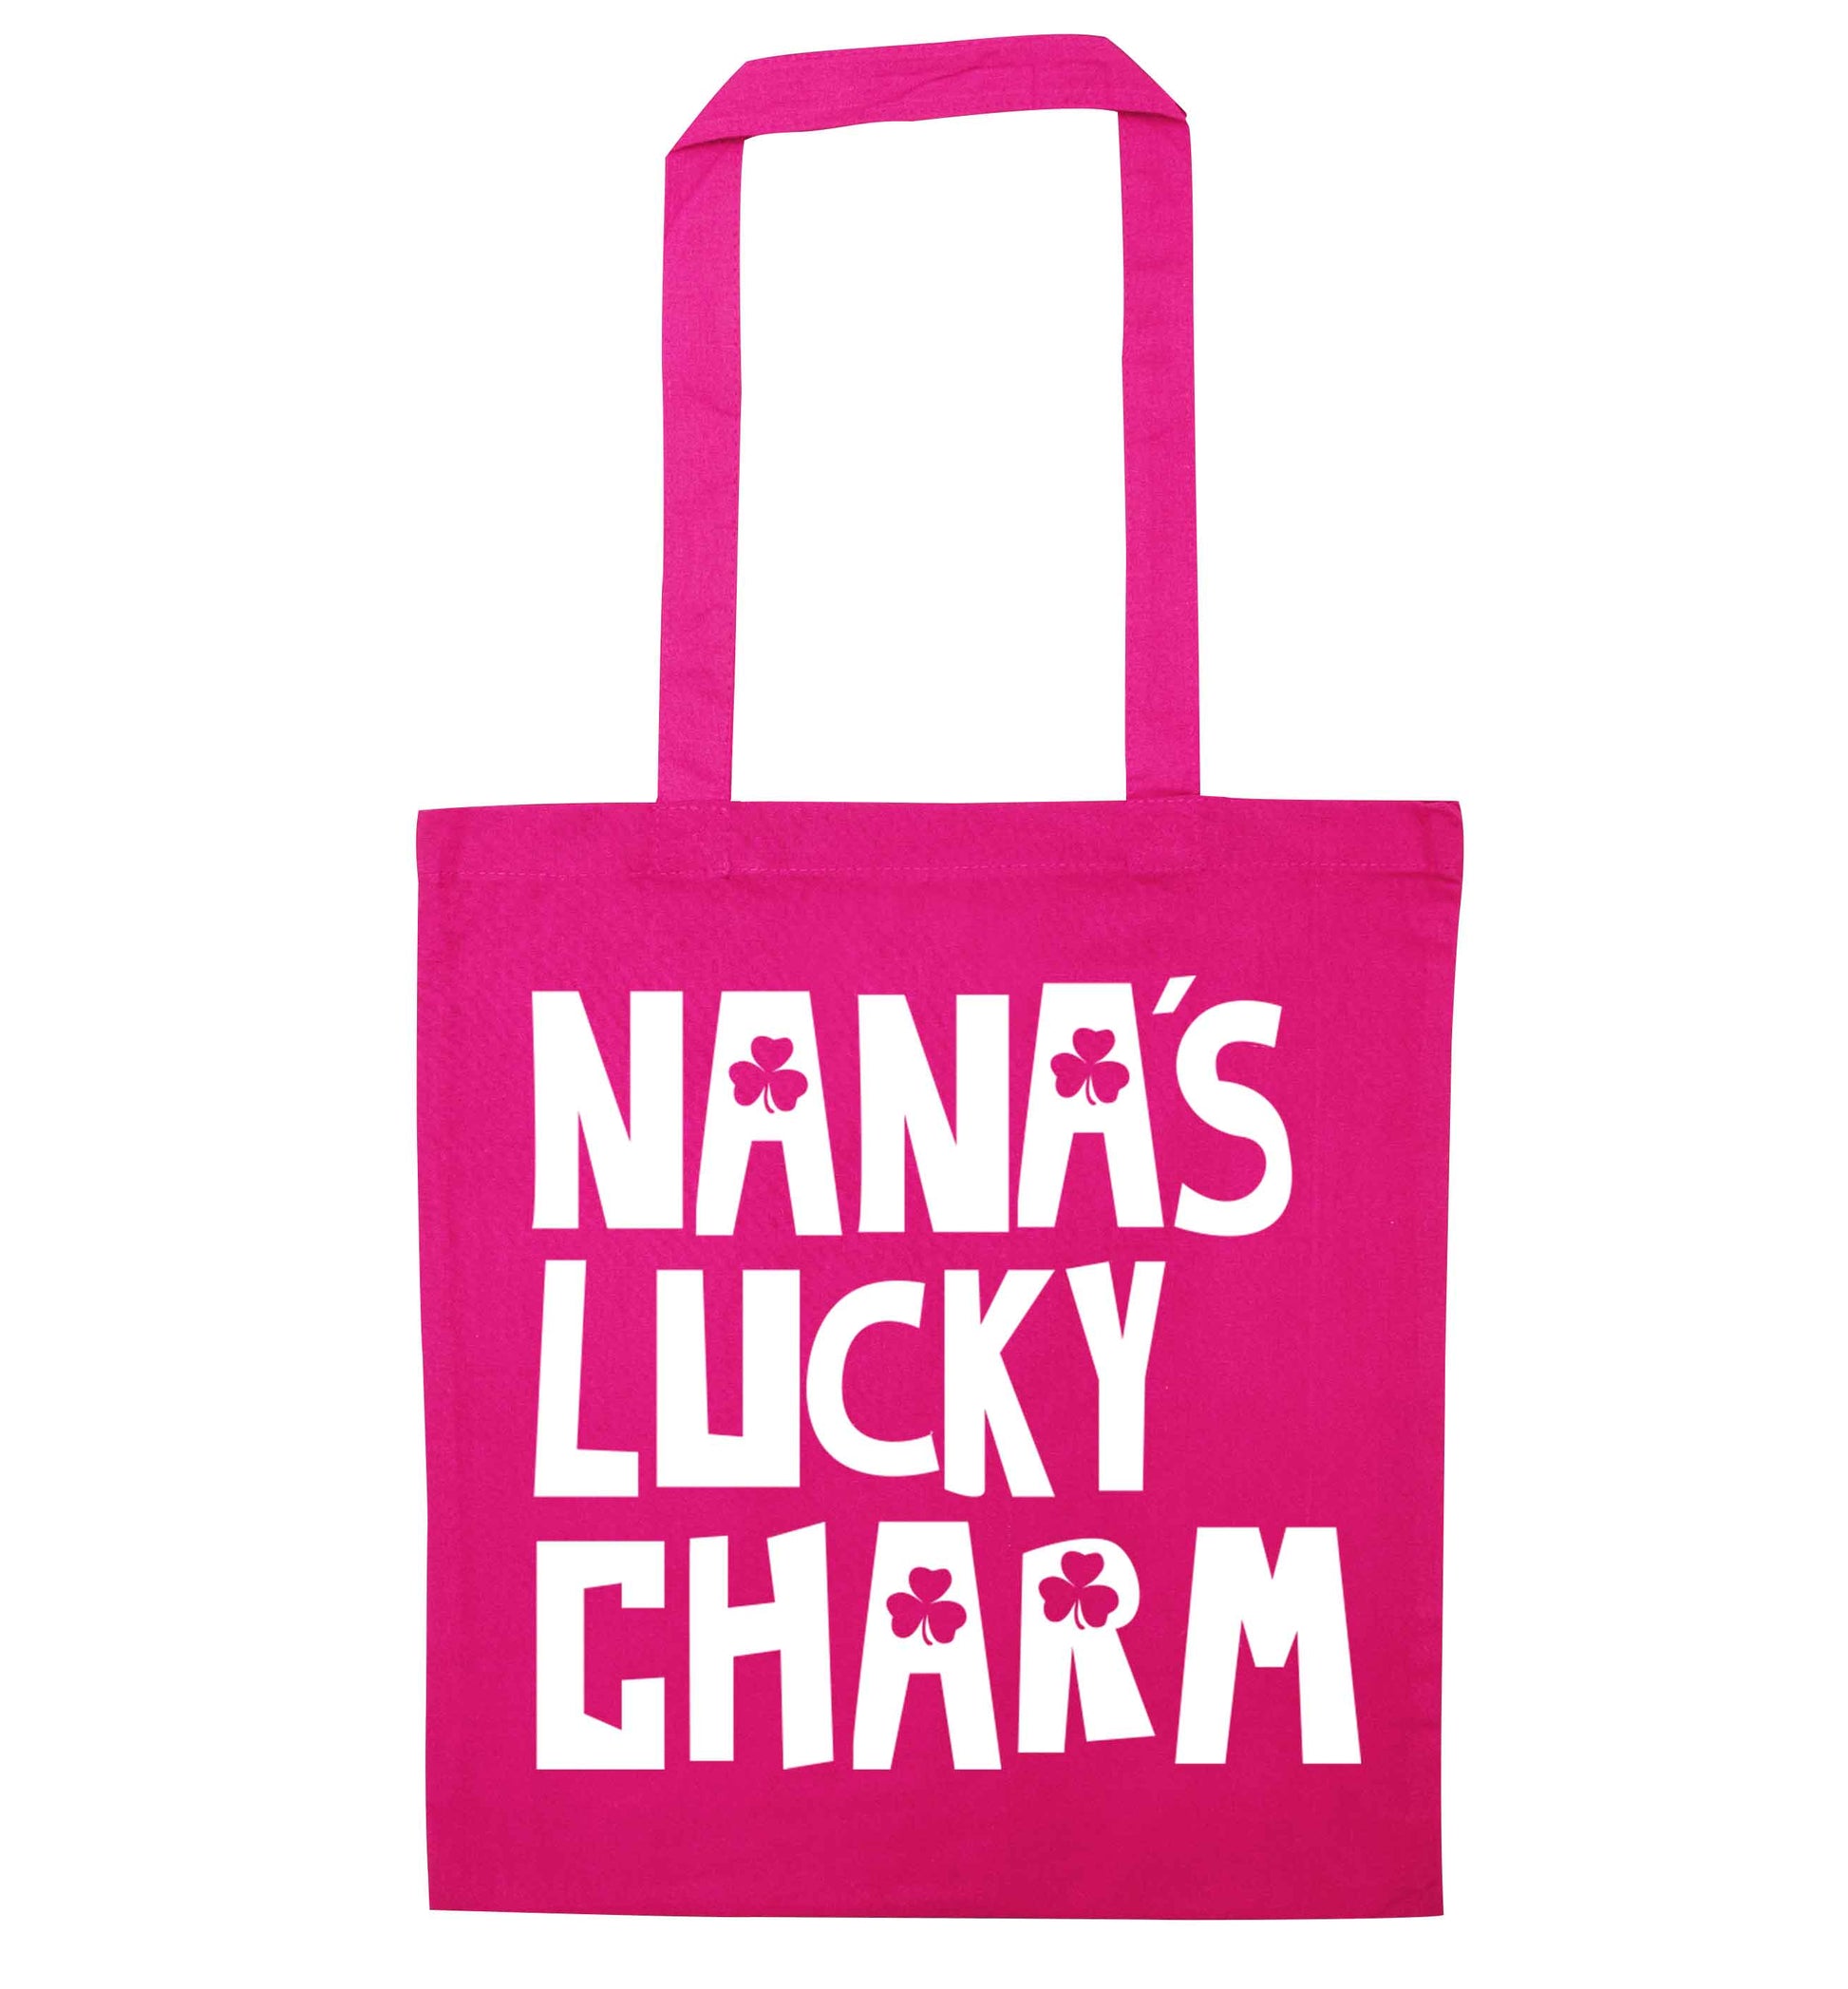 Nana's lucky charm pink tote bag